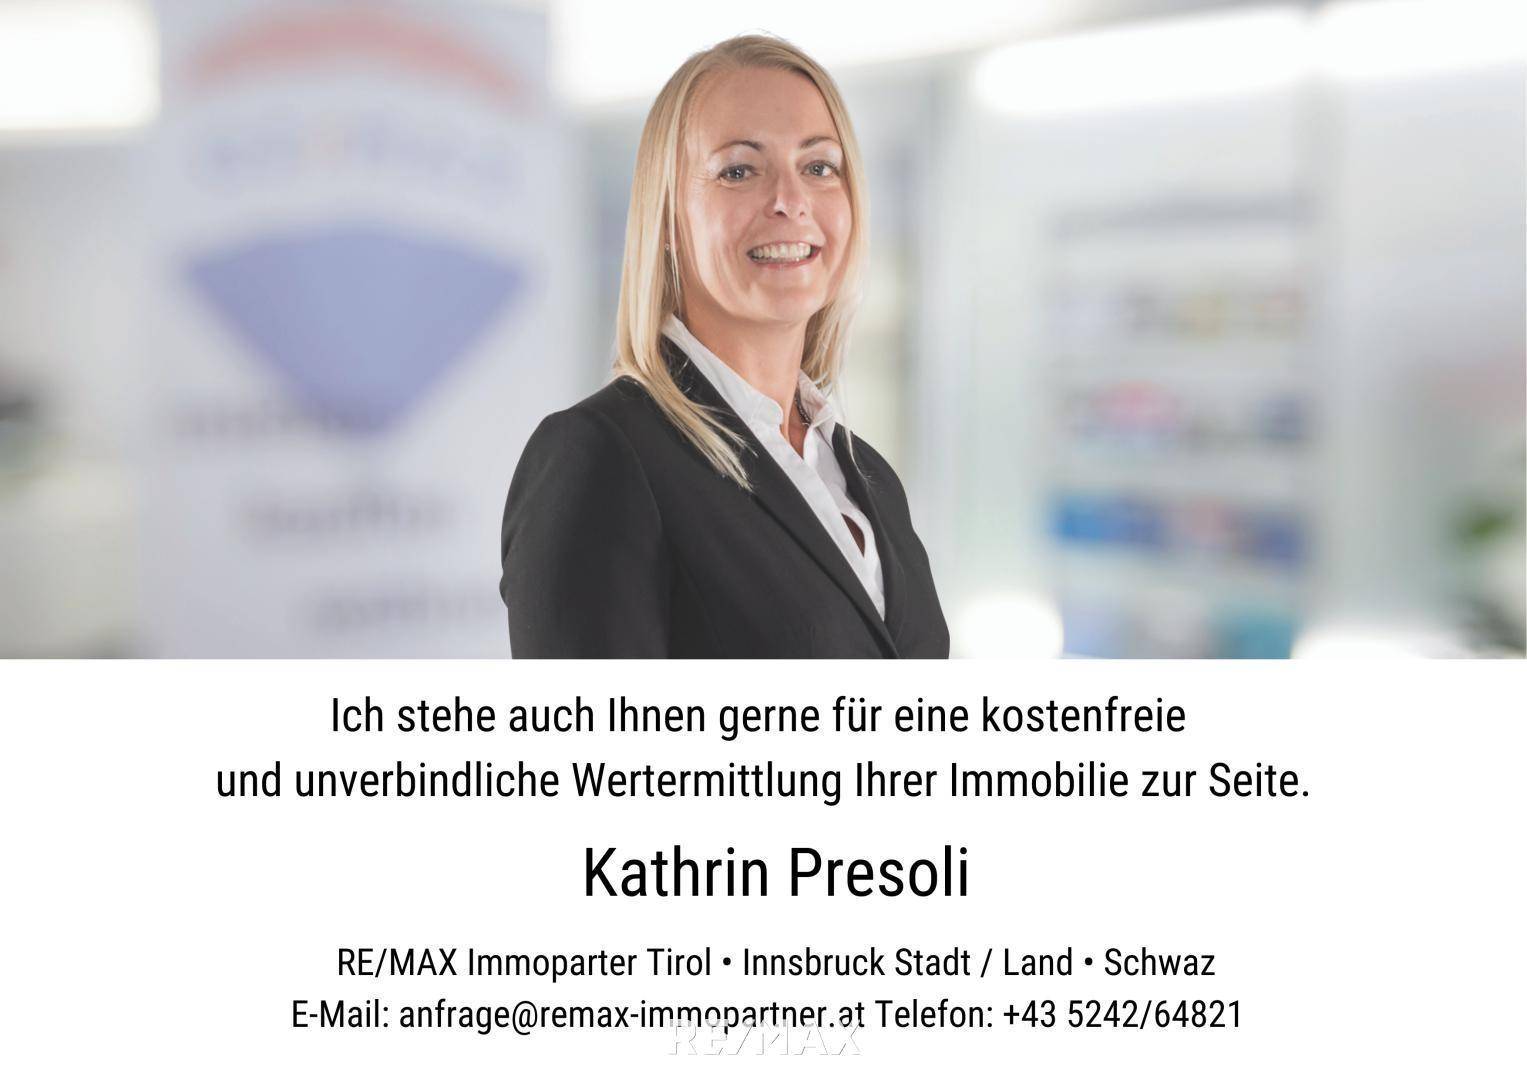 Kathrin Presoli #remaximmopartner